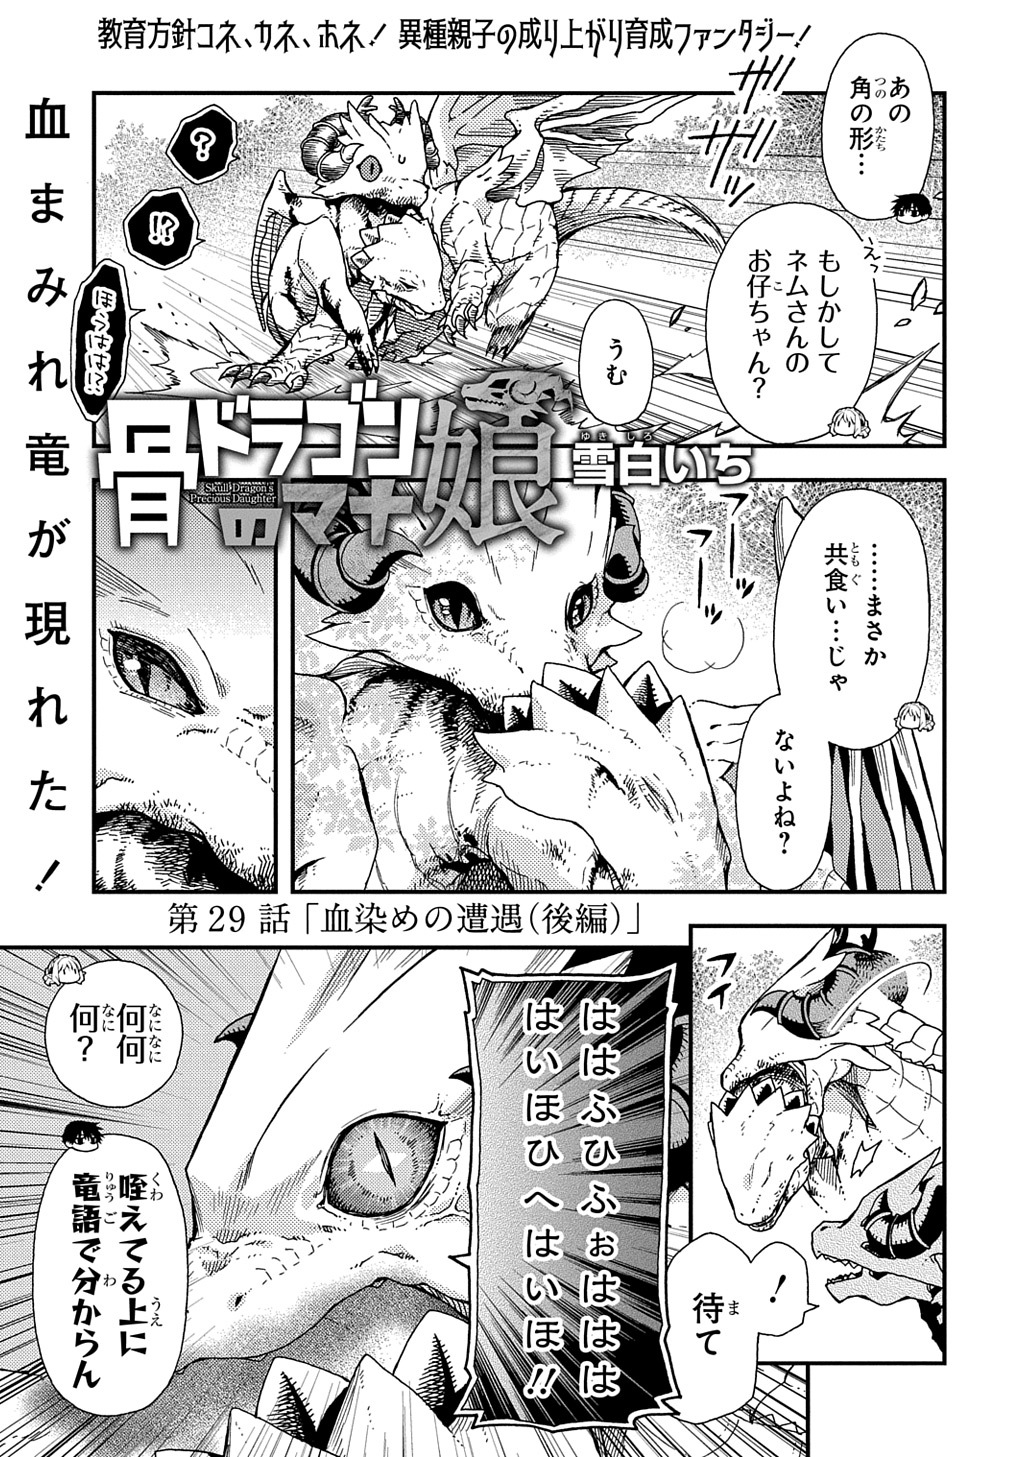 Hone Dragon no Mana Musume - Chapter 29.2 - Page 1